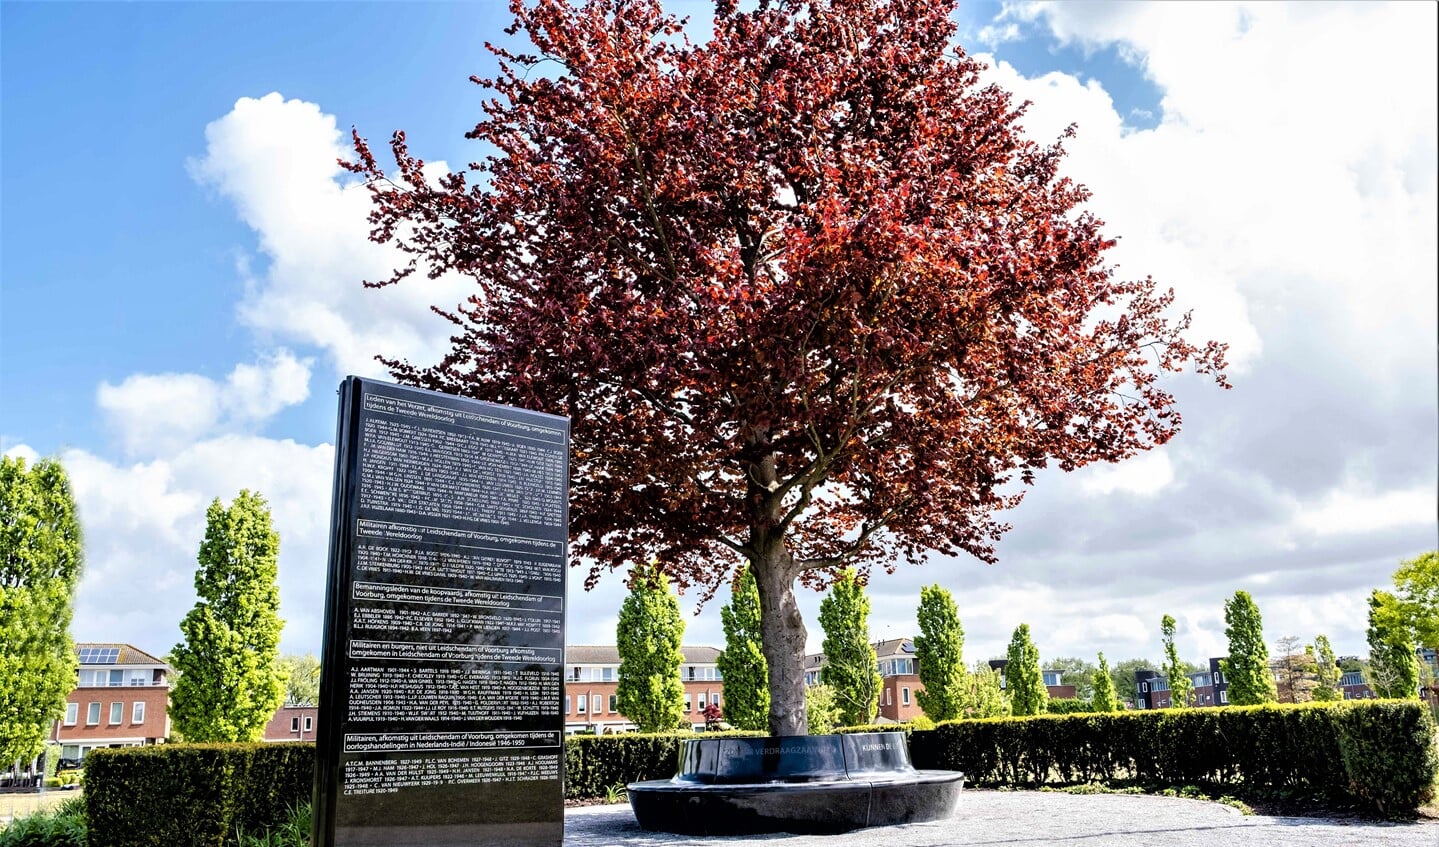 Bij het monument voor Vrede en Veiligheid in Park Sijtwende in Voorburg wordt een besloten herdenking gehouden (foto: gemeente LV).